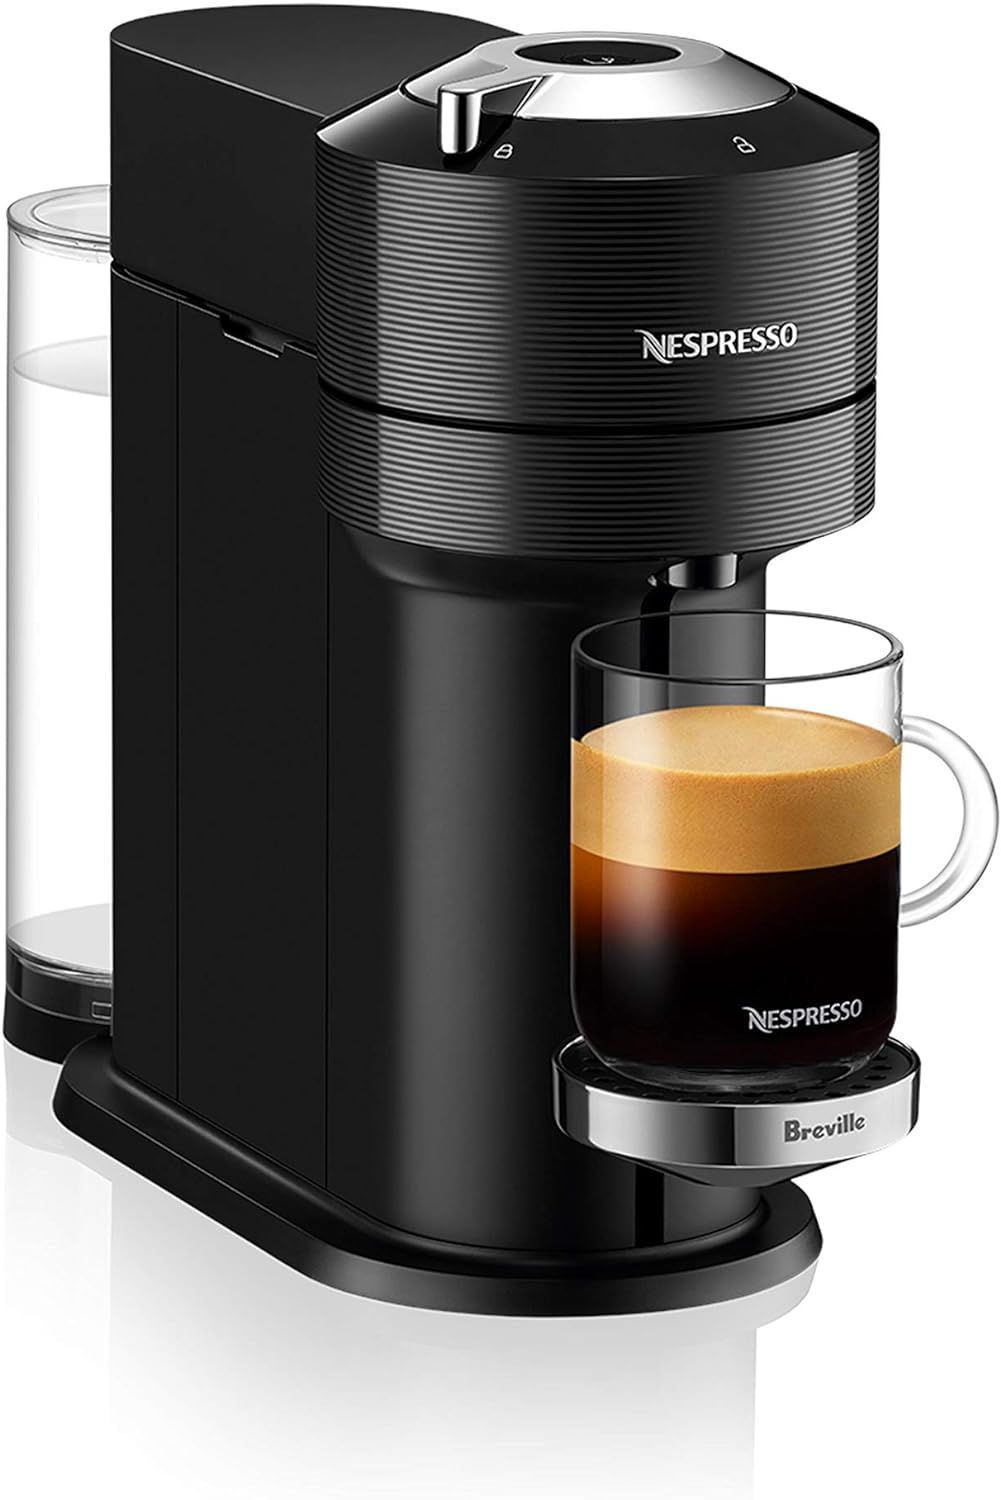 Nespresso® Vertuo Next Premium Coffee and Espresso Machine by Breville, Classic Black | Amazon (CA)